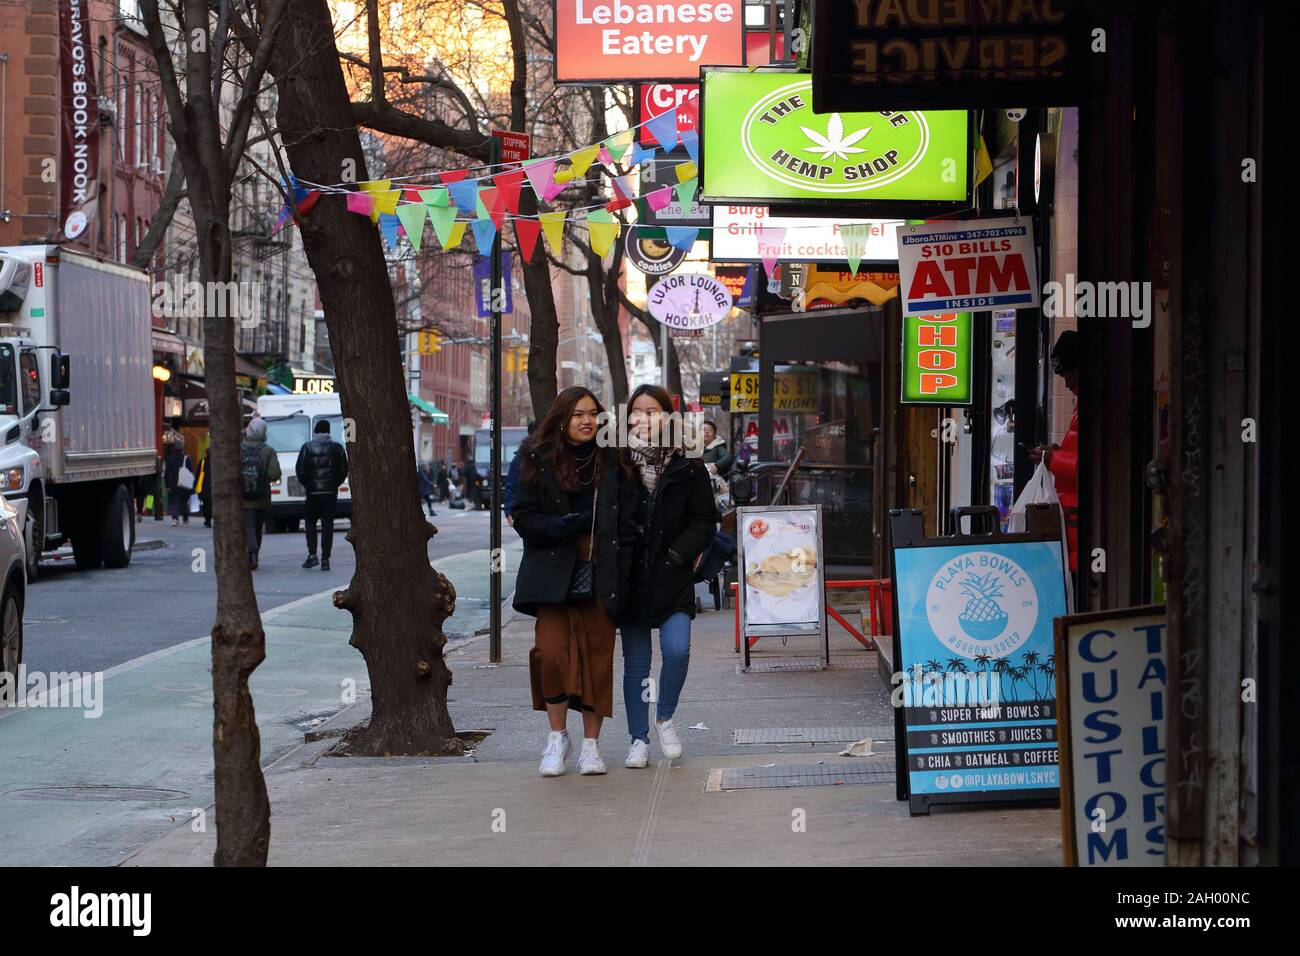 Personnes marchant sur Macdougal St près de l'Université de New York dans le quartier de Greenwich Village de Manhattan à New York, NY (20 décembre 2019) Banque D'Images